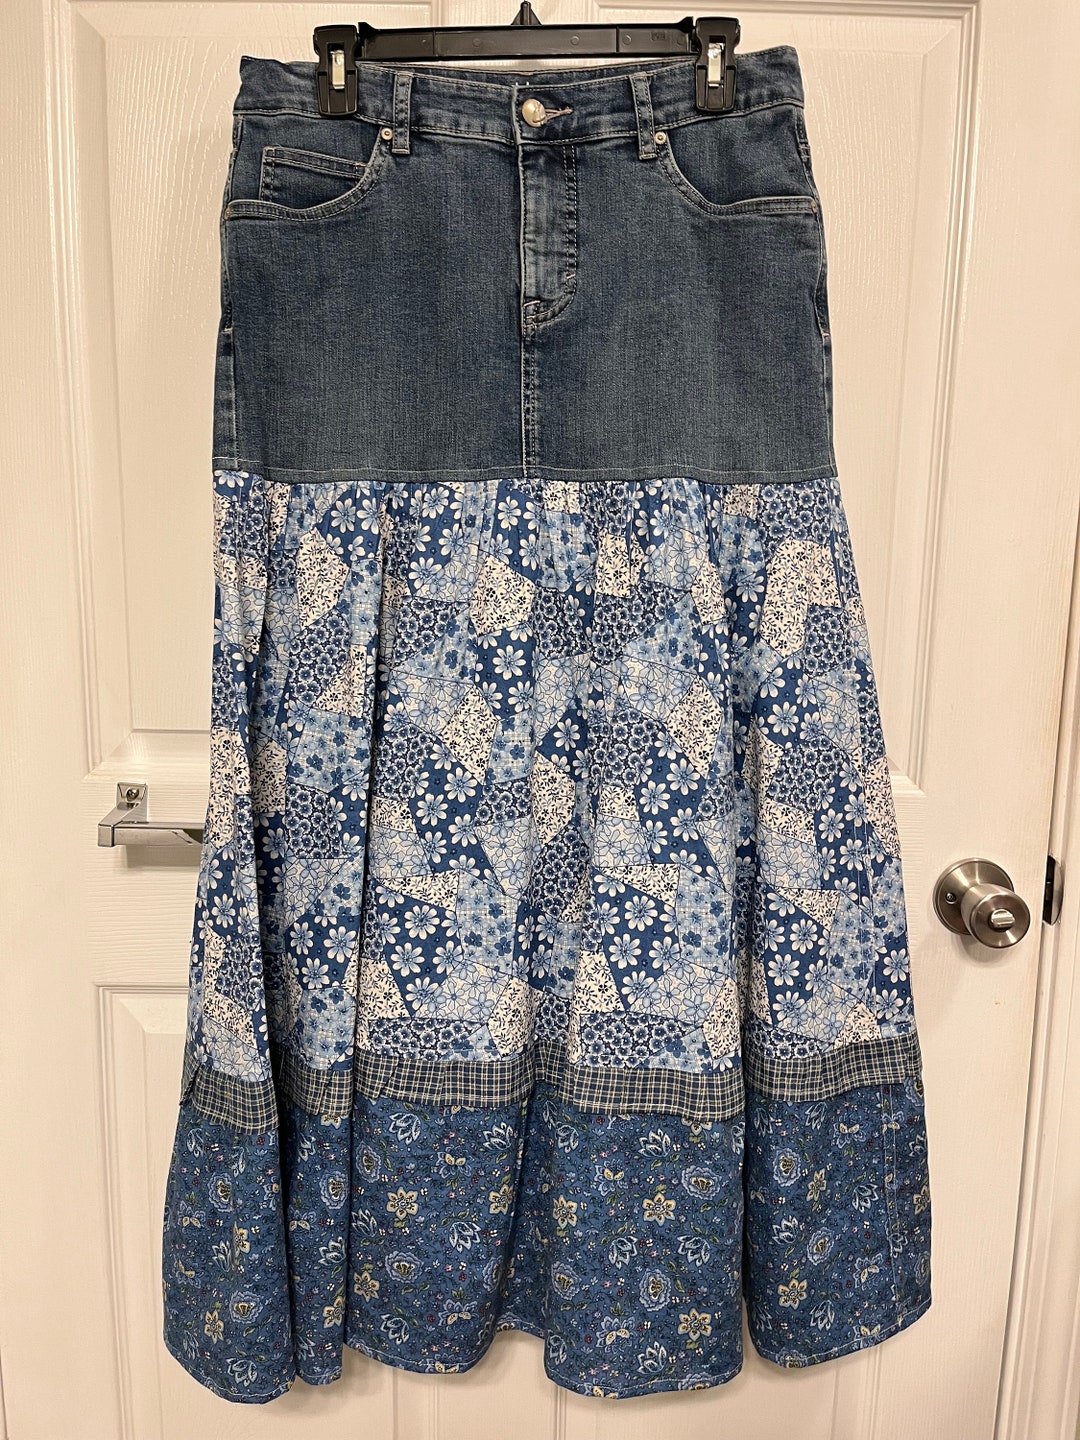 Denim Skirt Western Skirt Repurposed Blue Flower Denim Skirt Recycled ...